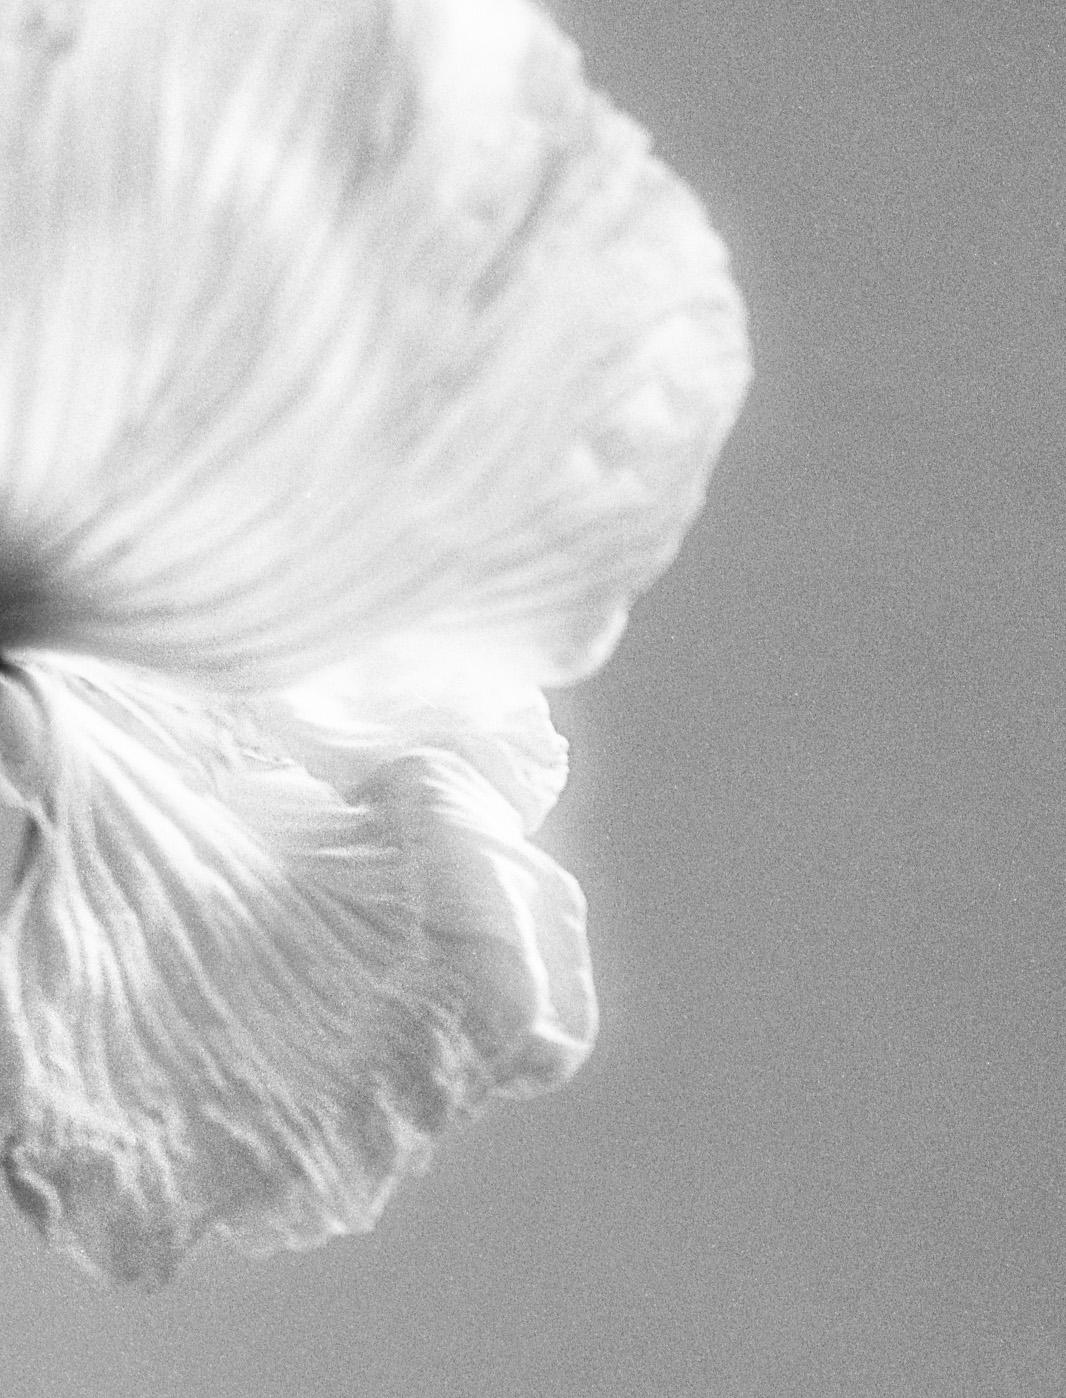 Mohnblumen Nr.3 – Analogue Schwarz-Weiß-Blumenfotografie, limitierte Auflage von 15 Stück – Photograph von Ugne Pouwell